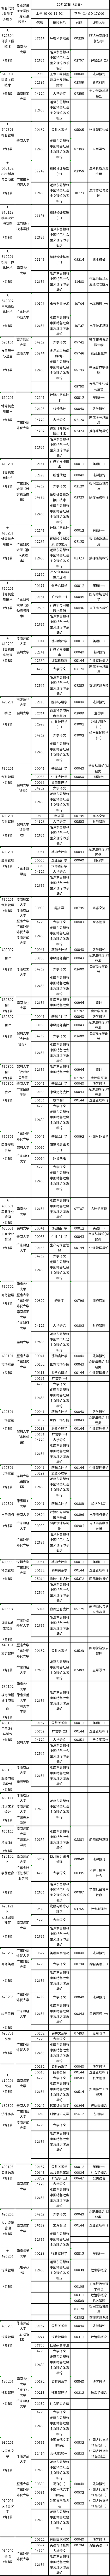 广东2022年10月23日自考(大专)开考专业及考试科目